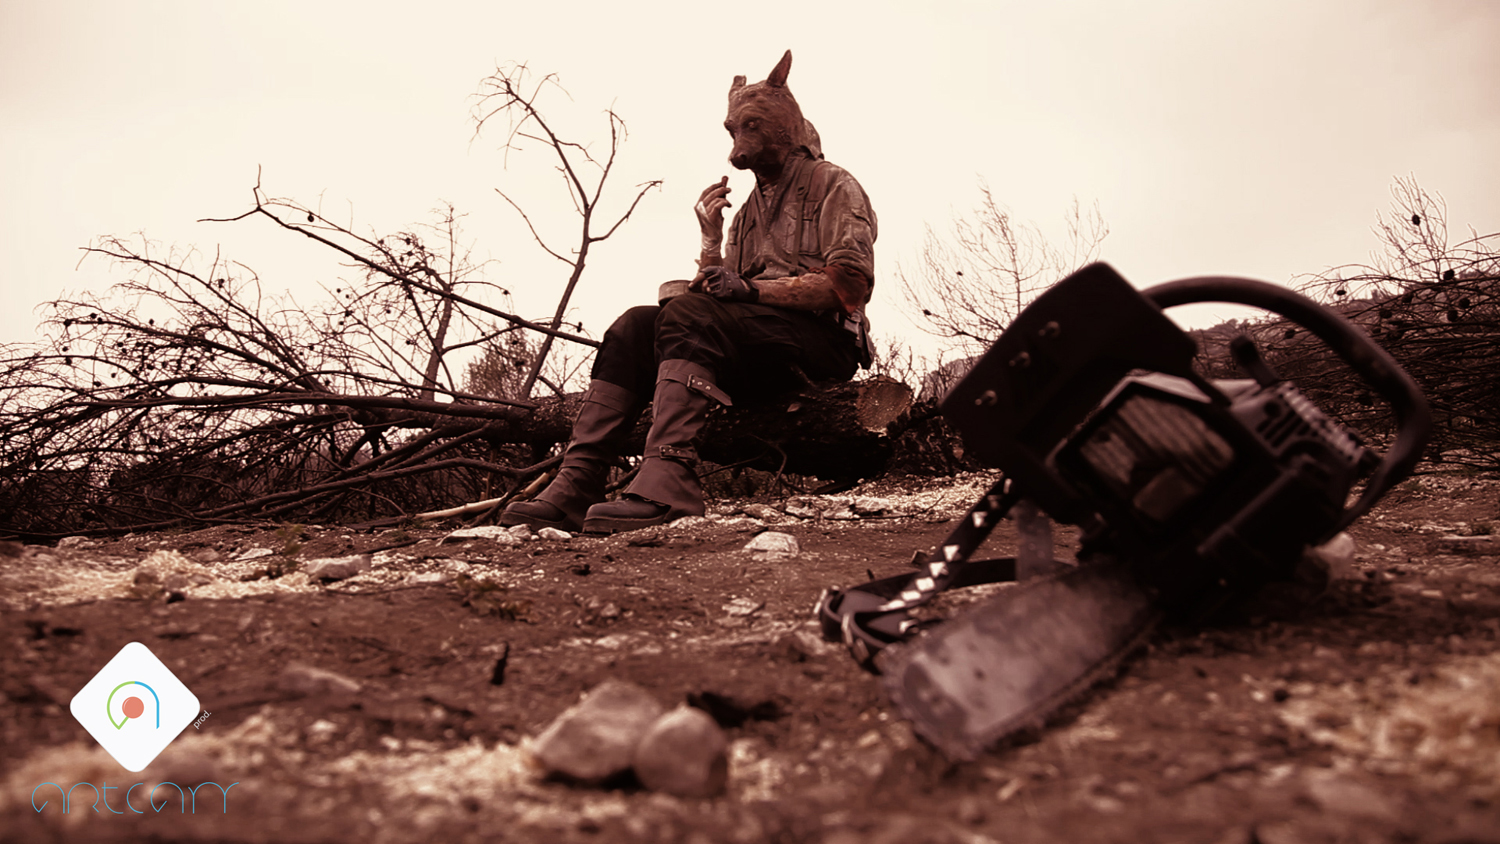 Un homme kangourou est assis sur une pierre, dans la garrigue, et devant lui, au sol, se trouve une tronçonneuse